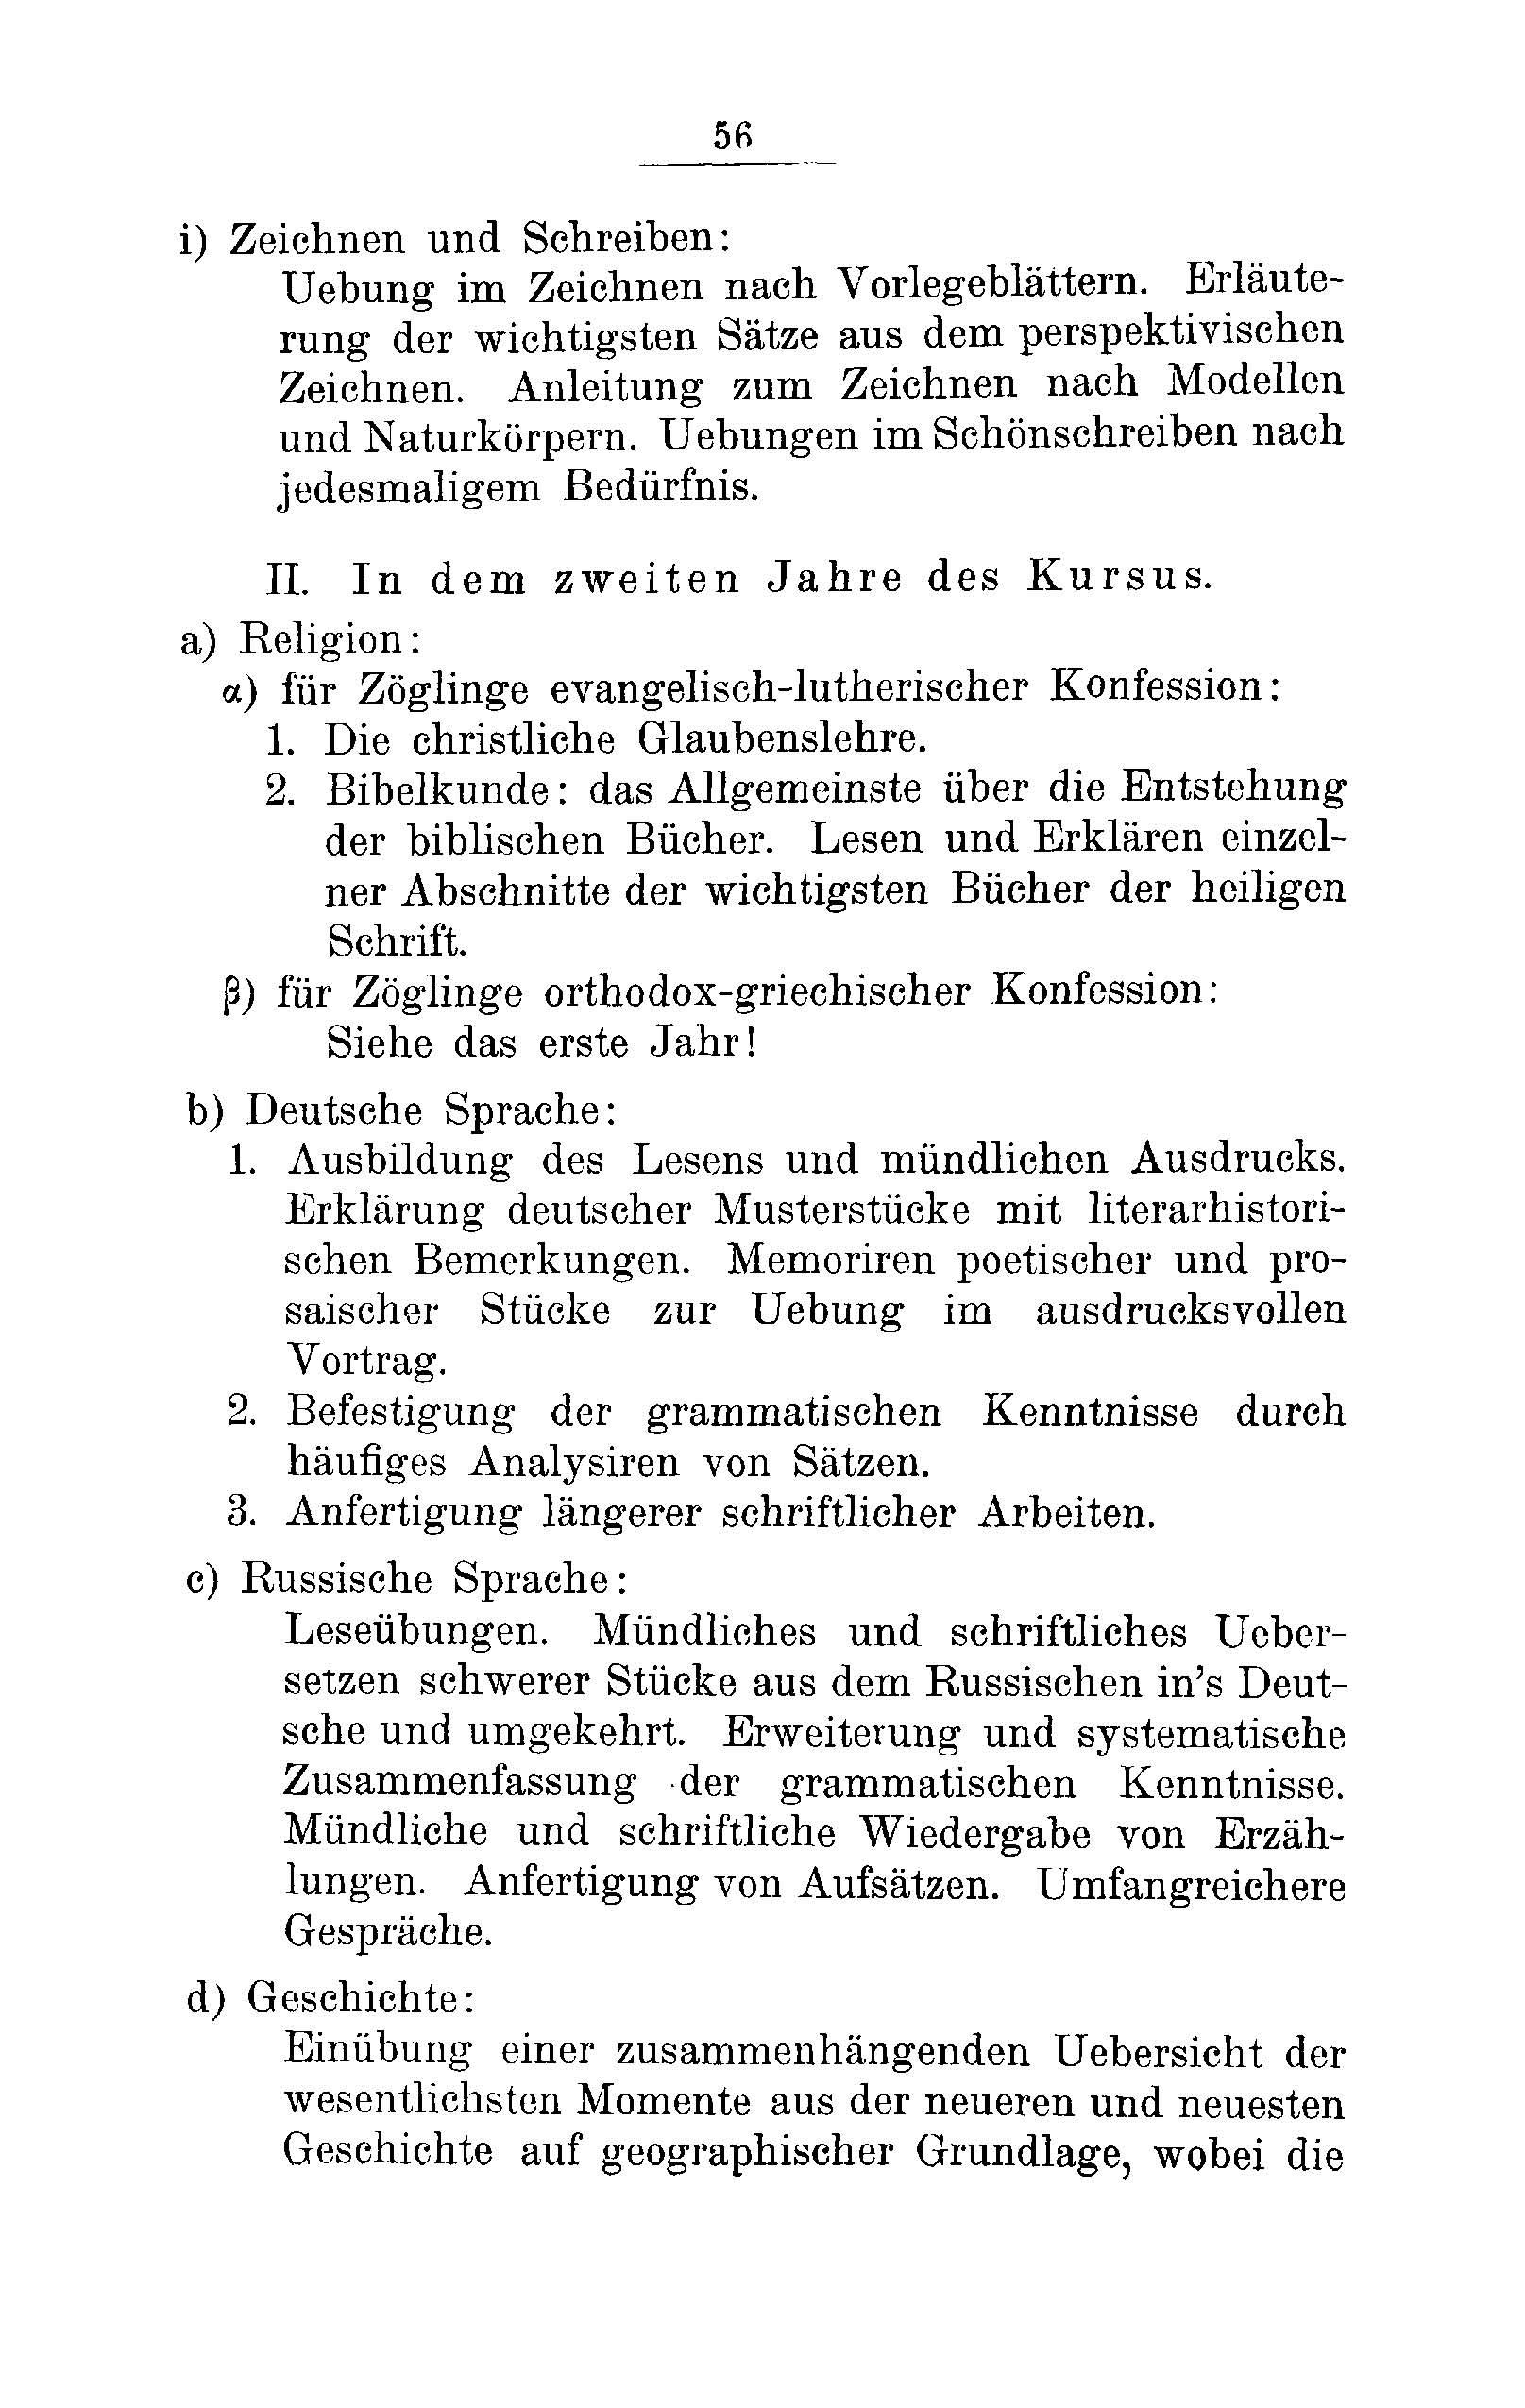 Das Erste Dorpatsche Lehrer-Seminar (1890) | 59. Main body of text